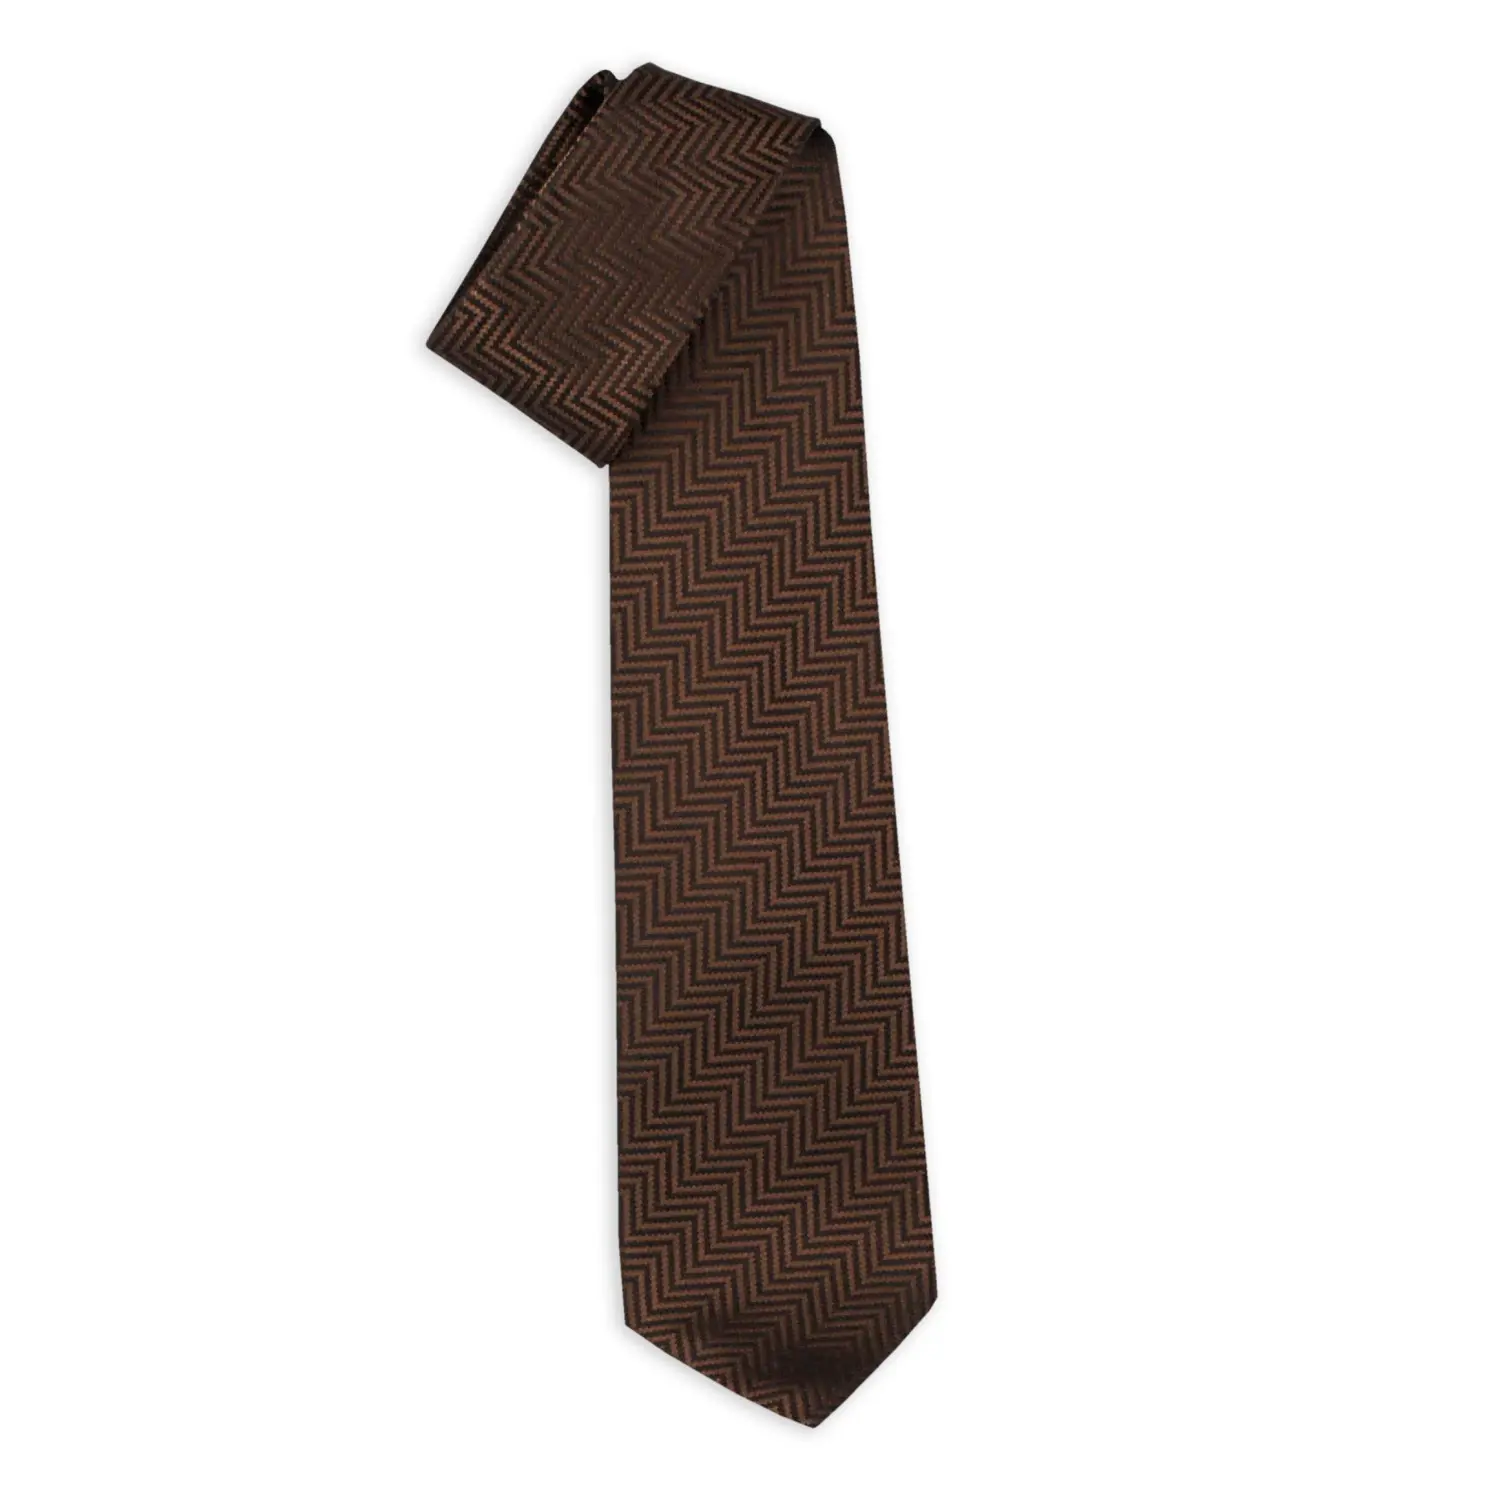 Cravatte a sette pieghe italiane fatte a mano-cravatte di seta Jacquard Milano marrone-moda senza tempo per tutti i signori